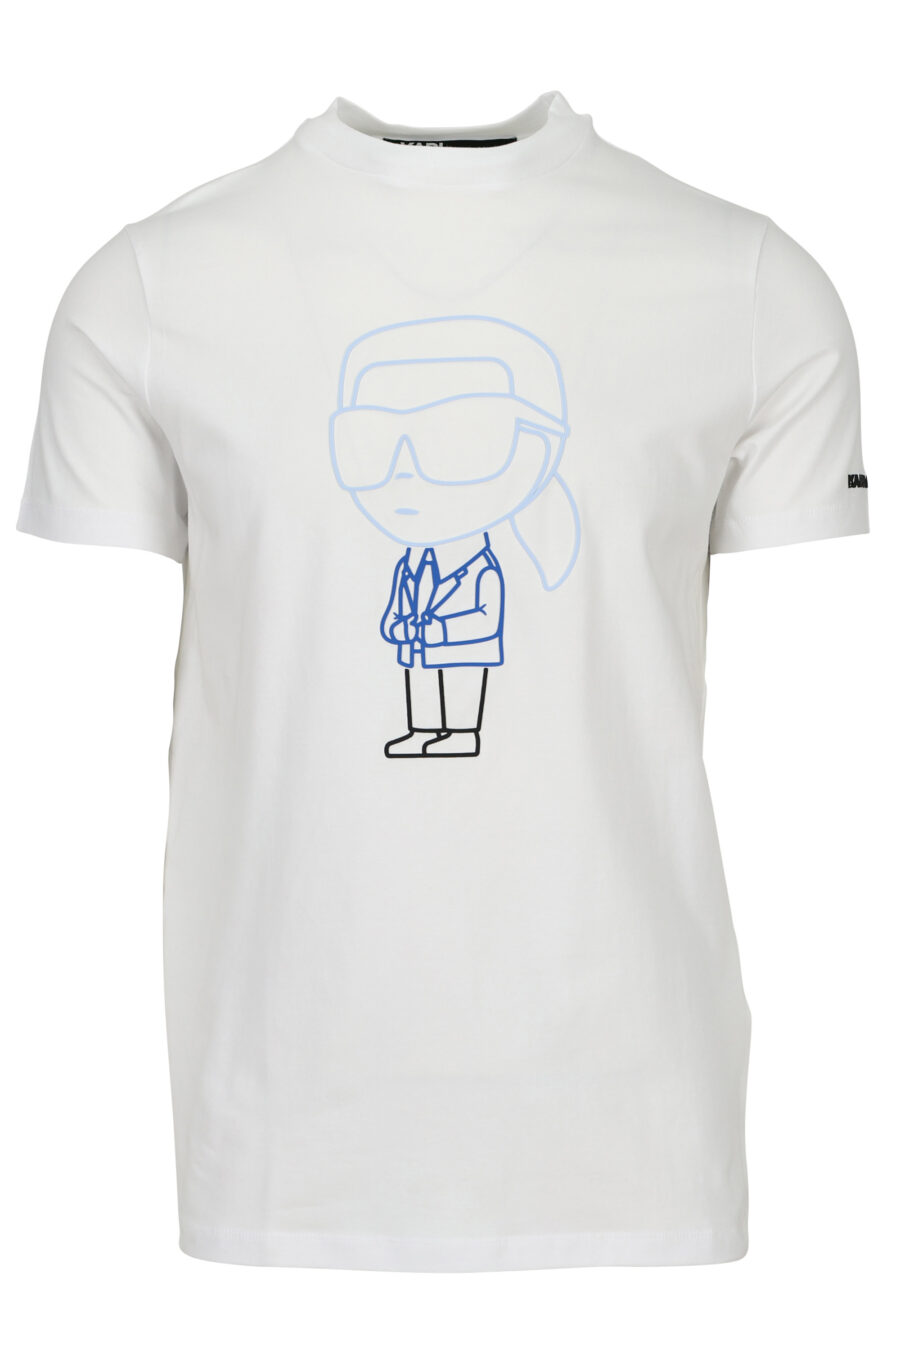 Camiseta blanca con maxilogo en goma "karl" en azul - 4062226788779